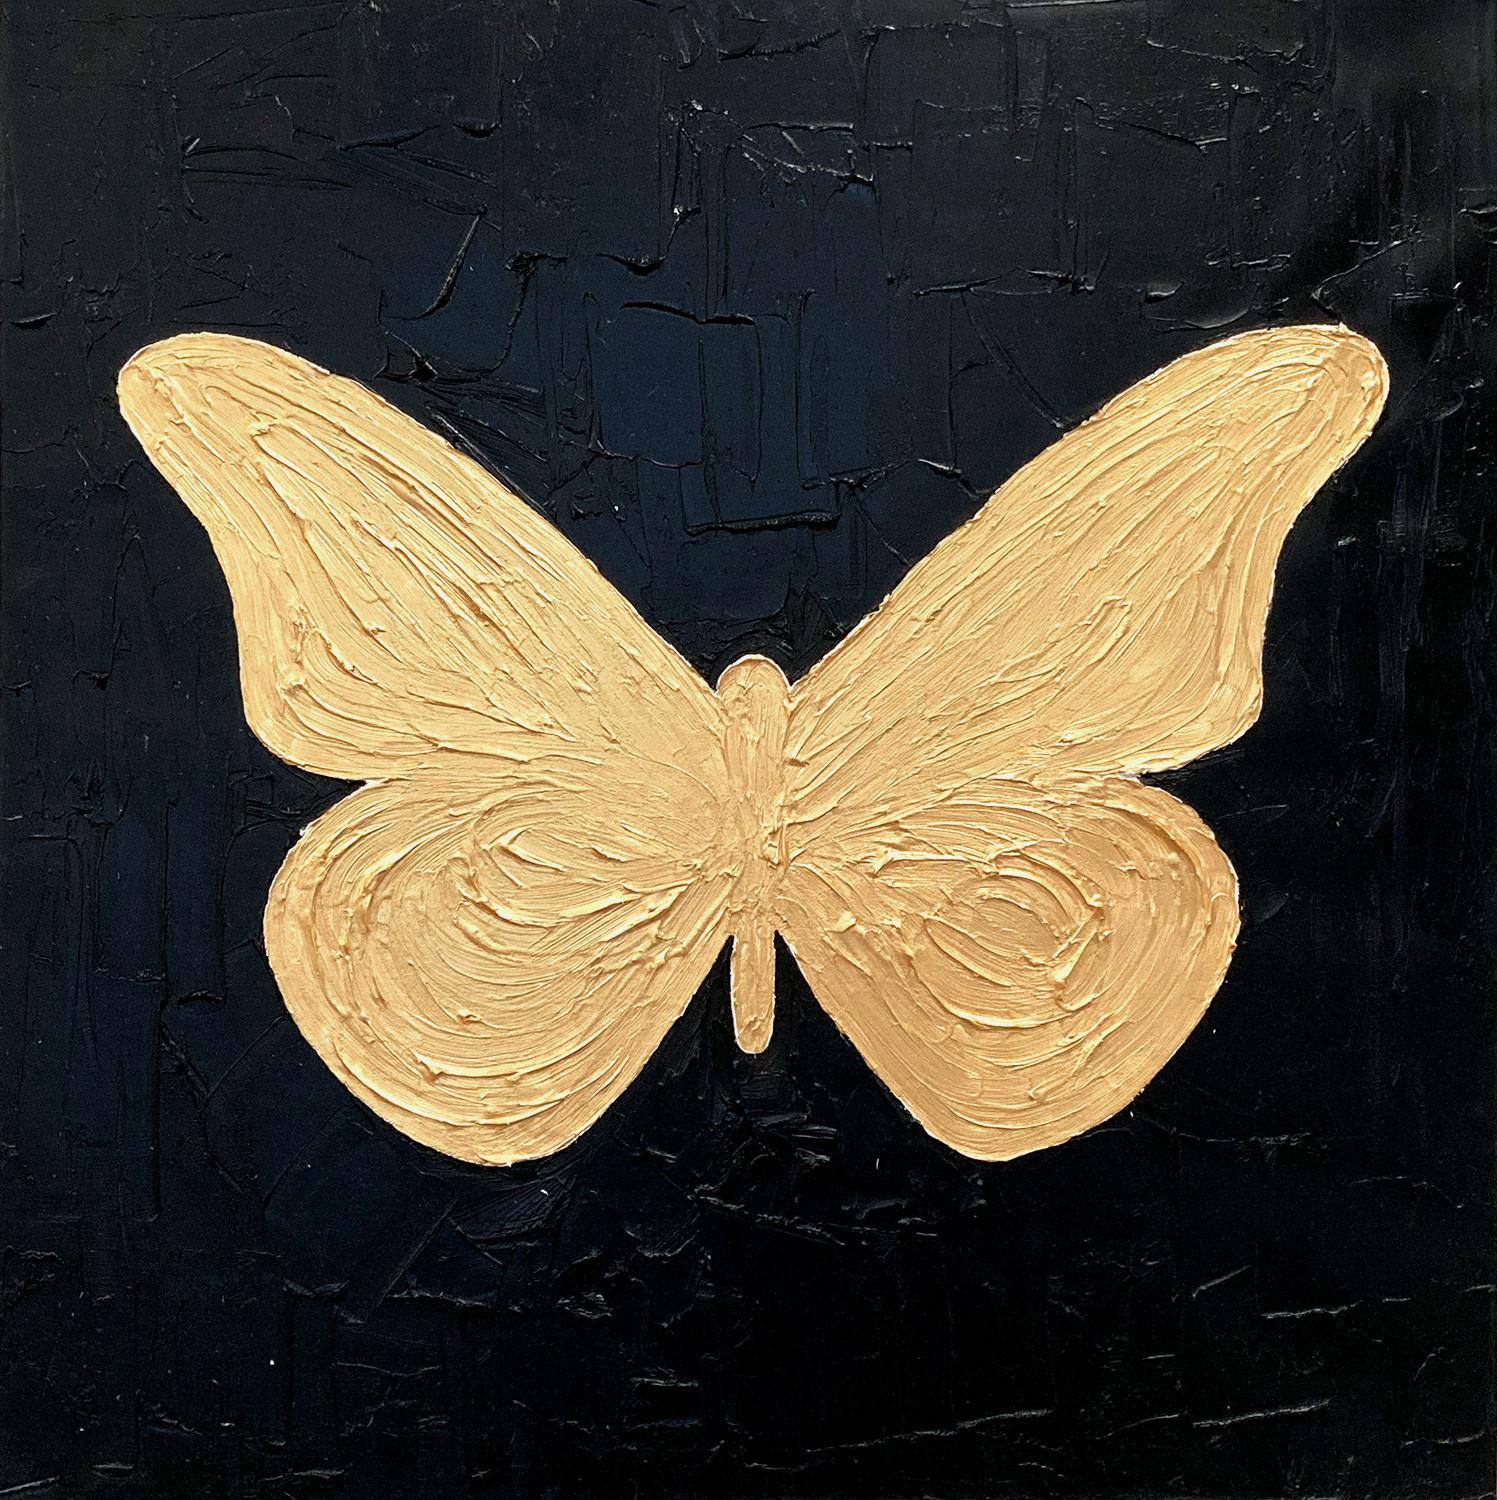 « My Golden Butterfly », peinture à l'huile contemporaine sur toile dorée et noire